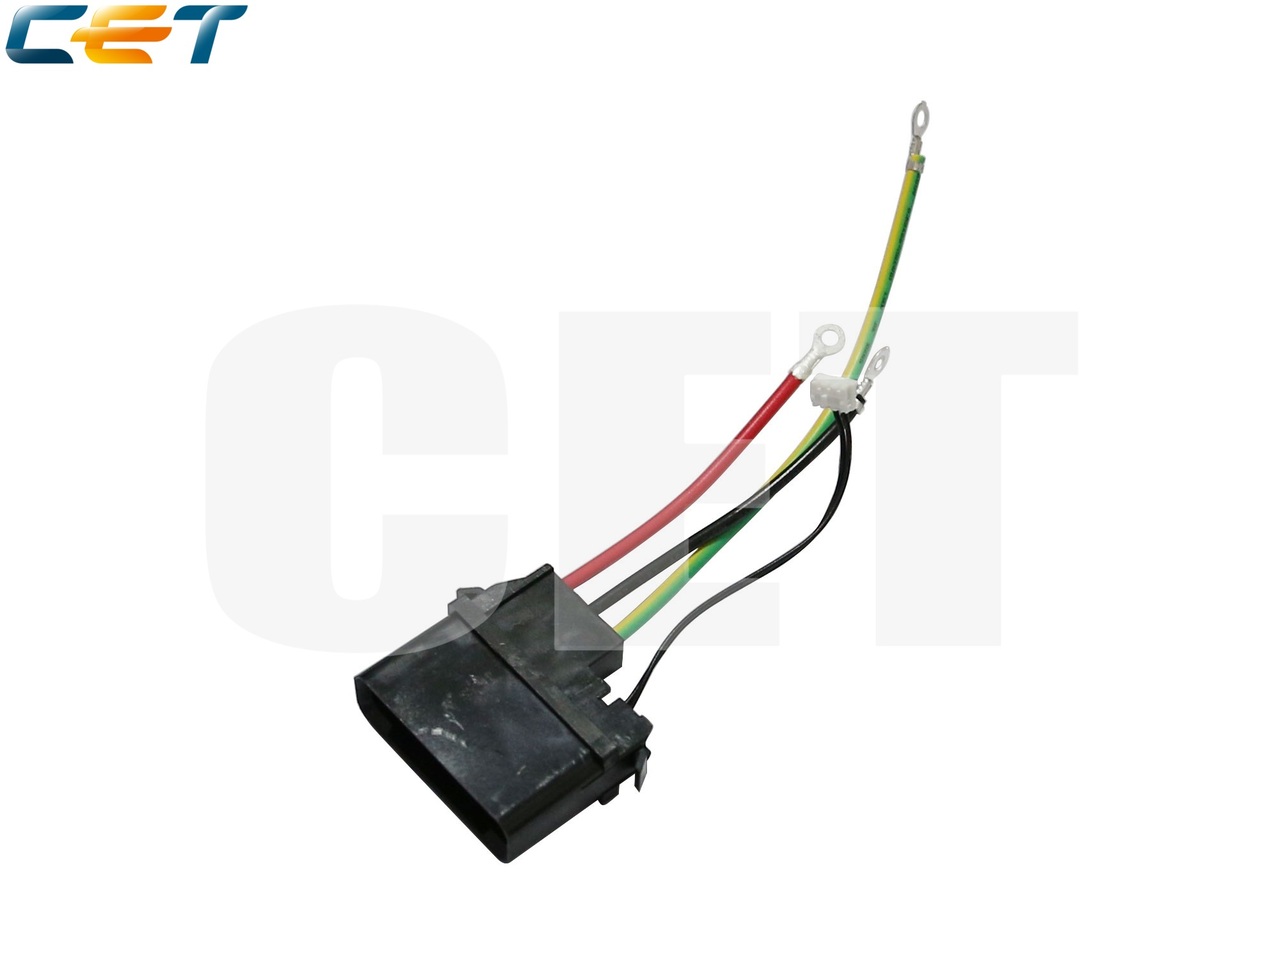 Высоковольтный кабель фьюзера RG5-5698-000 для HPLaserJet 9000/9040/9050 (CET), CET4690